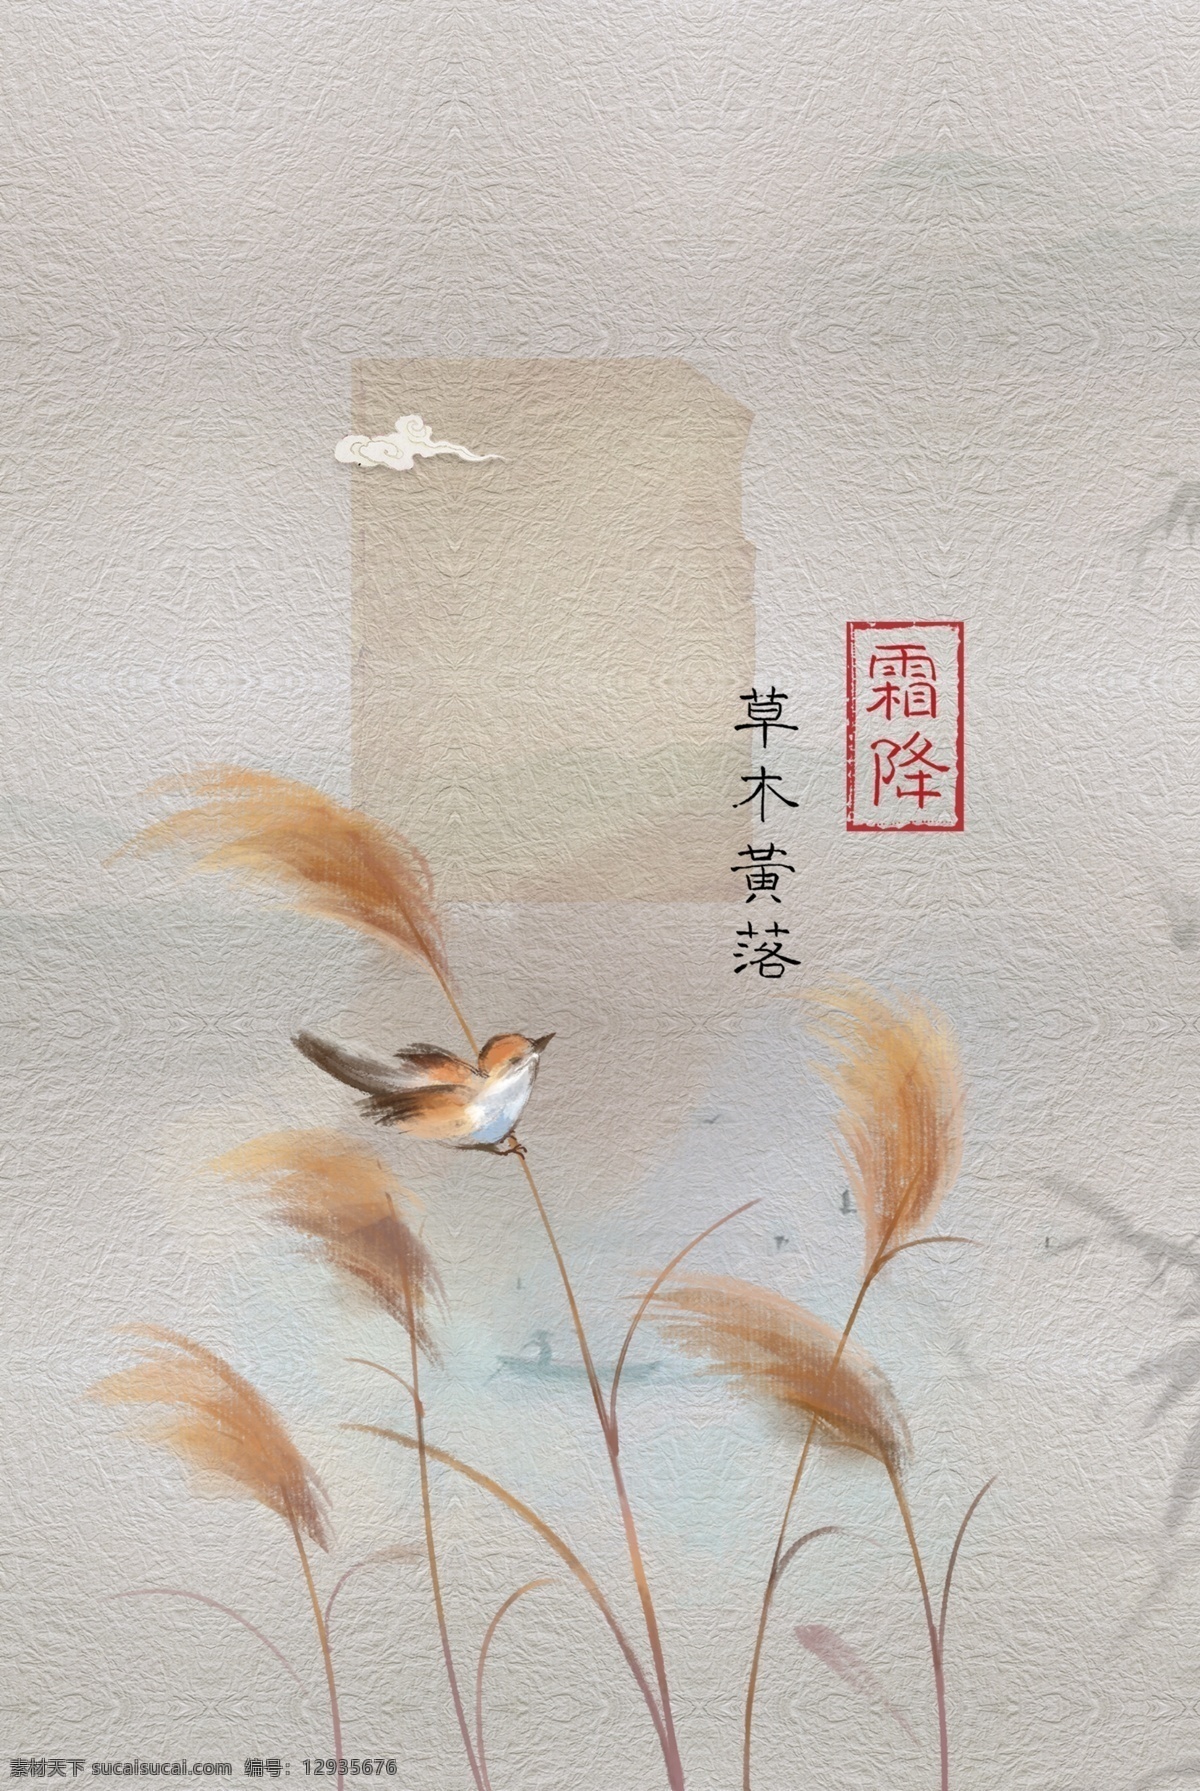 古风霜降 古风 古典 芦苇 鸟 霜降 传统 文化艺术 传统文化